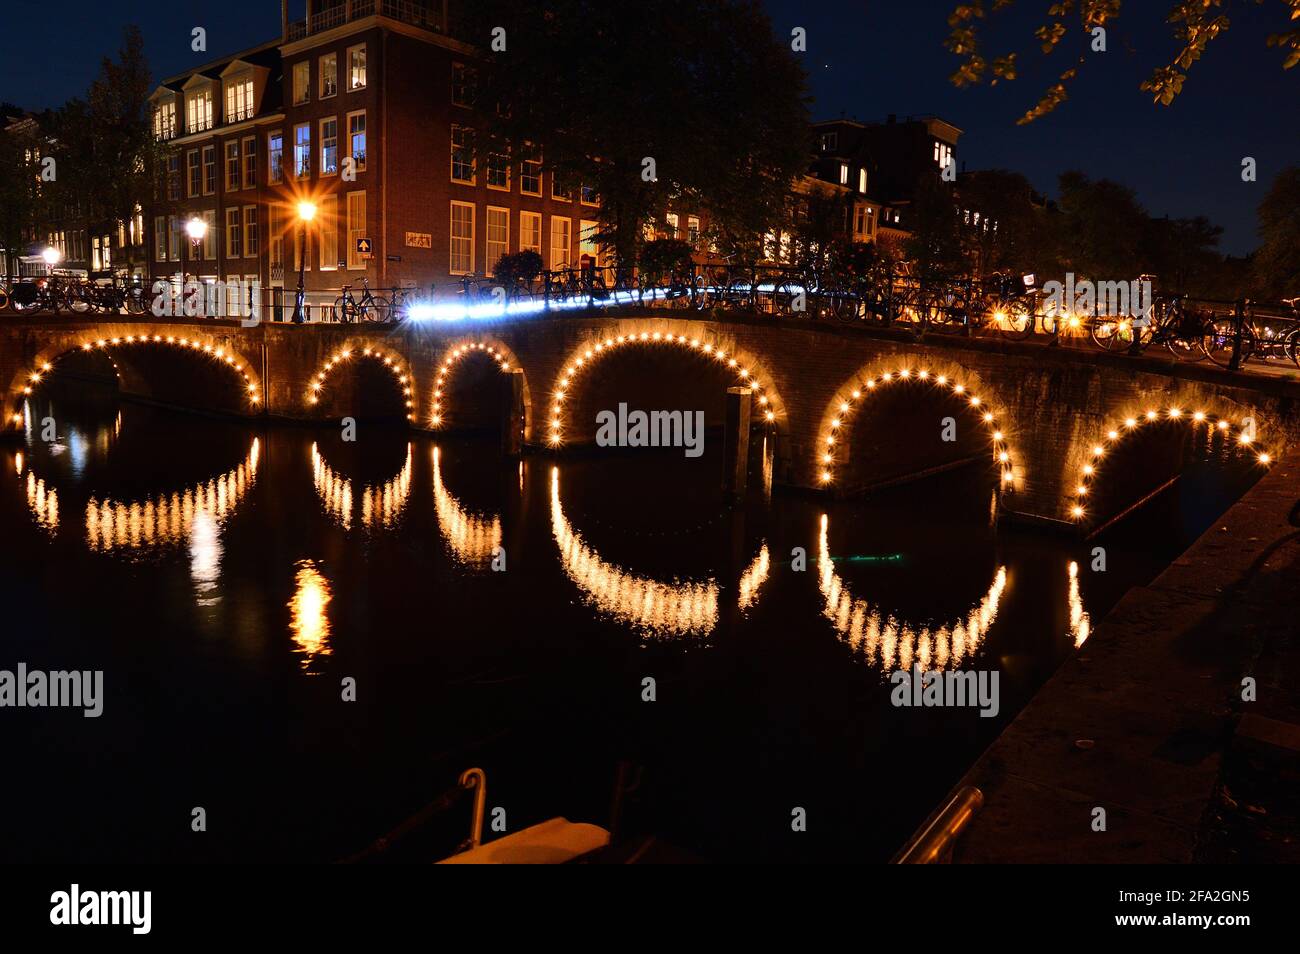 Una notte ad Amsterdam. Il ponte illuminato si riflette nell'acqua del canale. Estate. Foto Stock